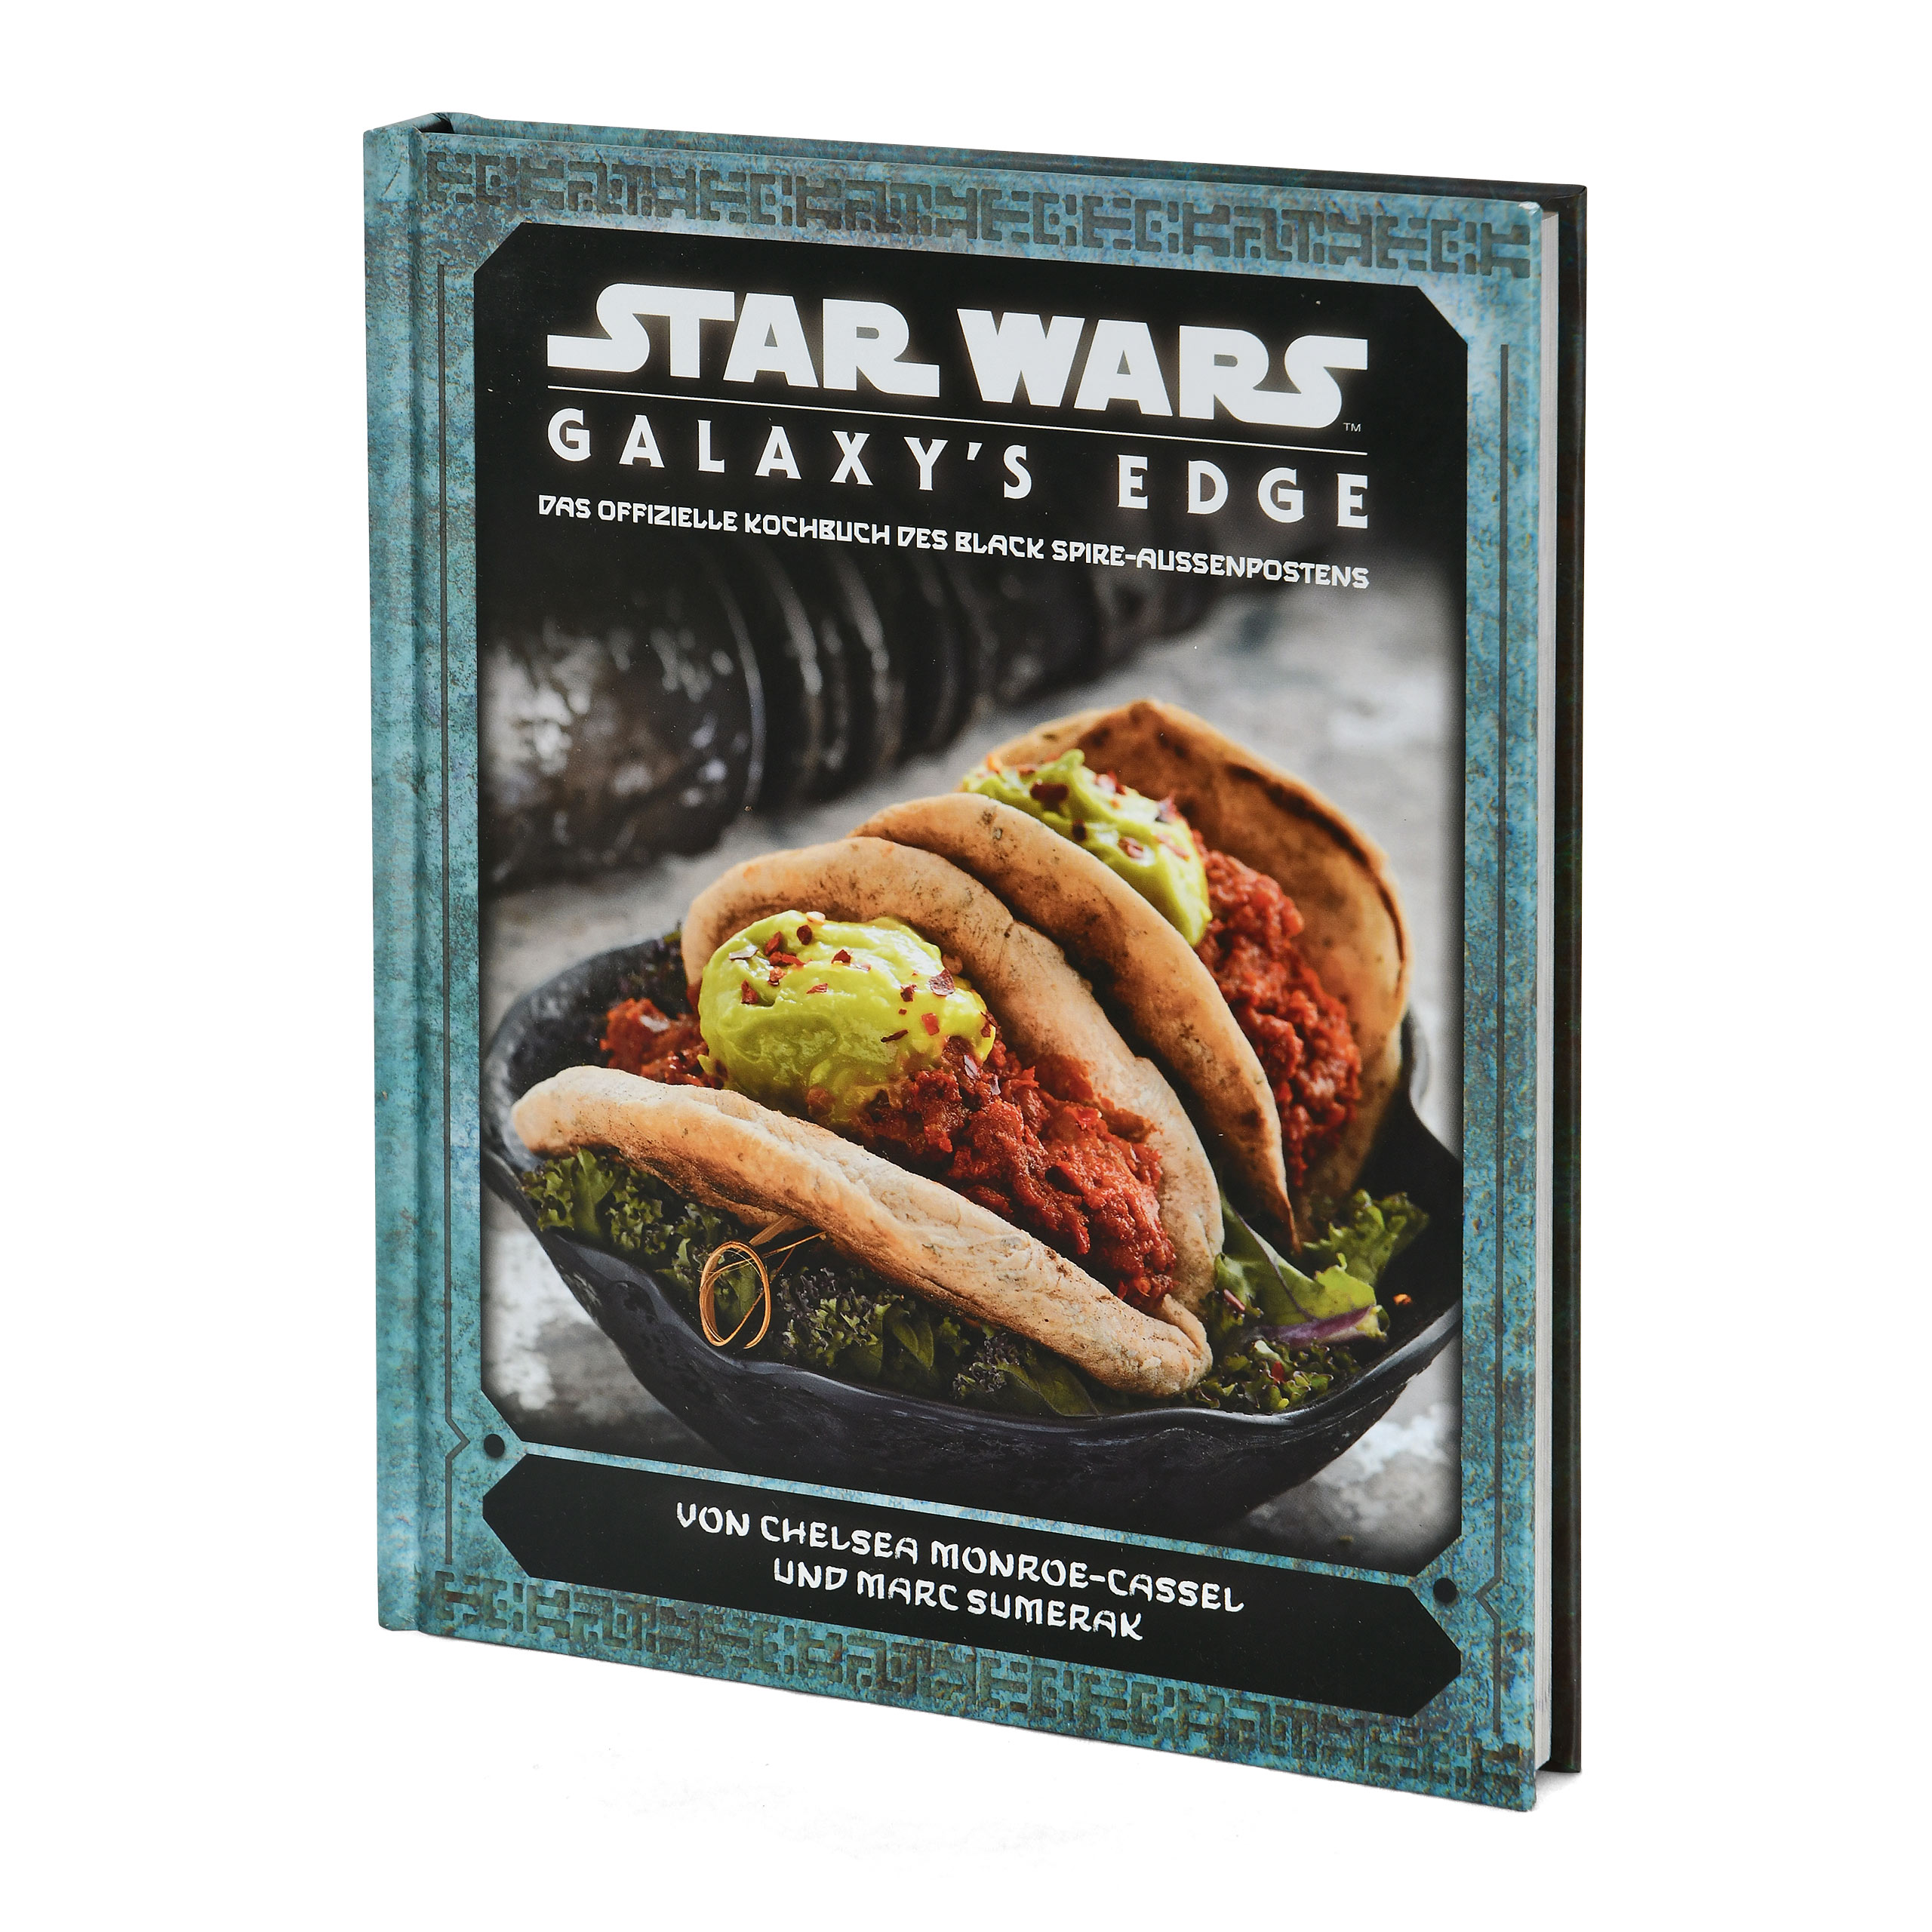 Star Wars - Galaxy's Edge Le livre de cuisine officiel de l'Avant-poste de Black Spire